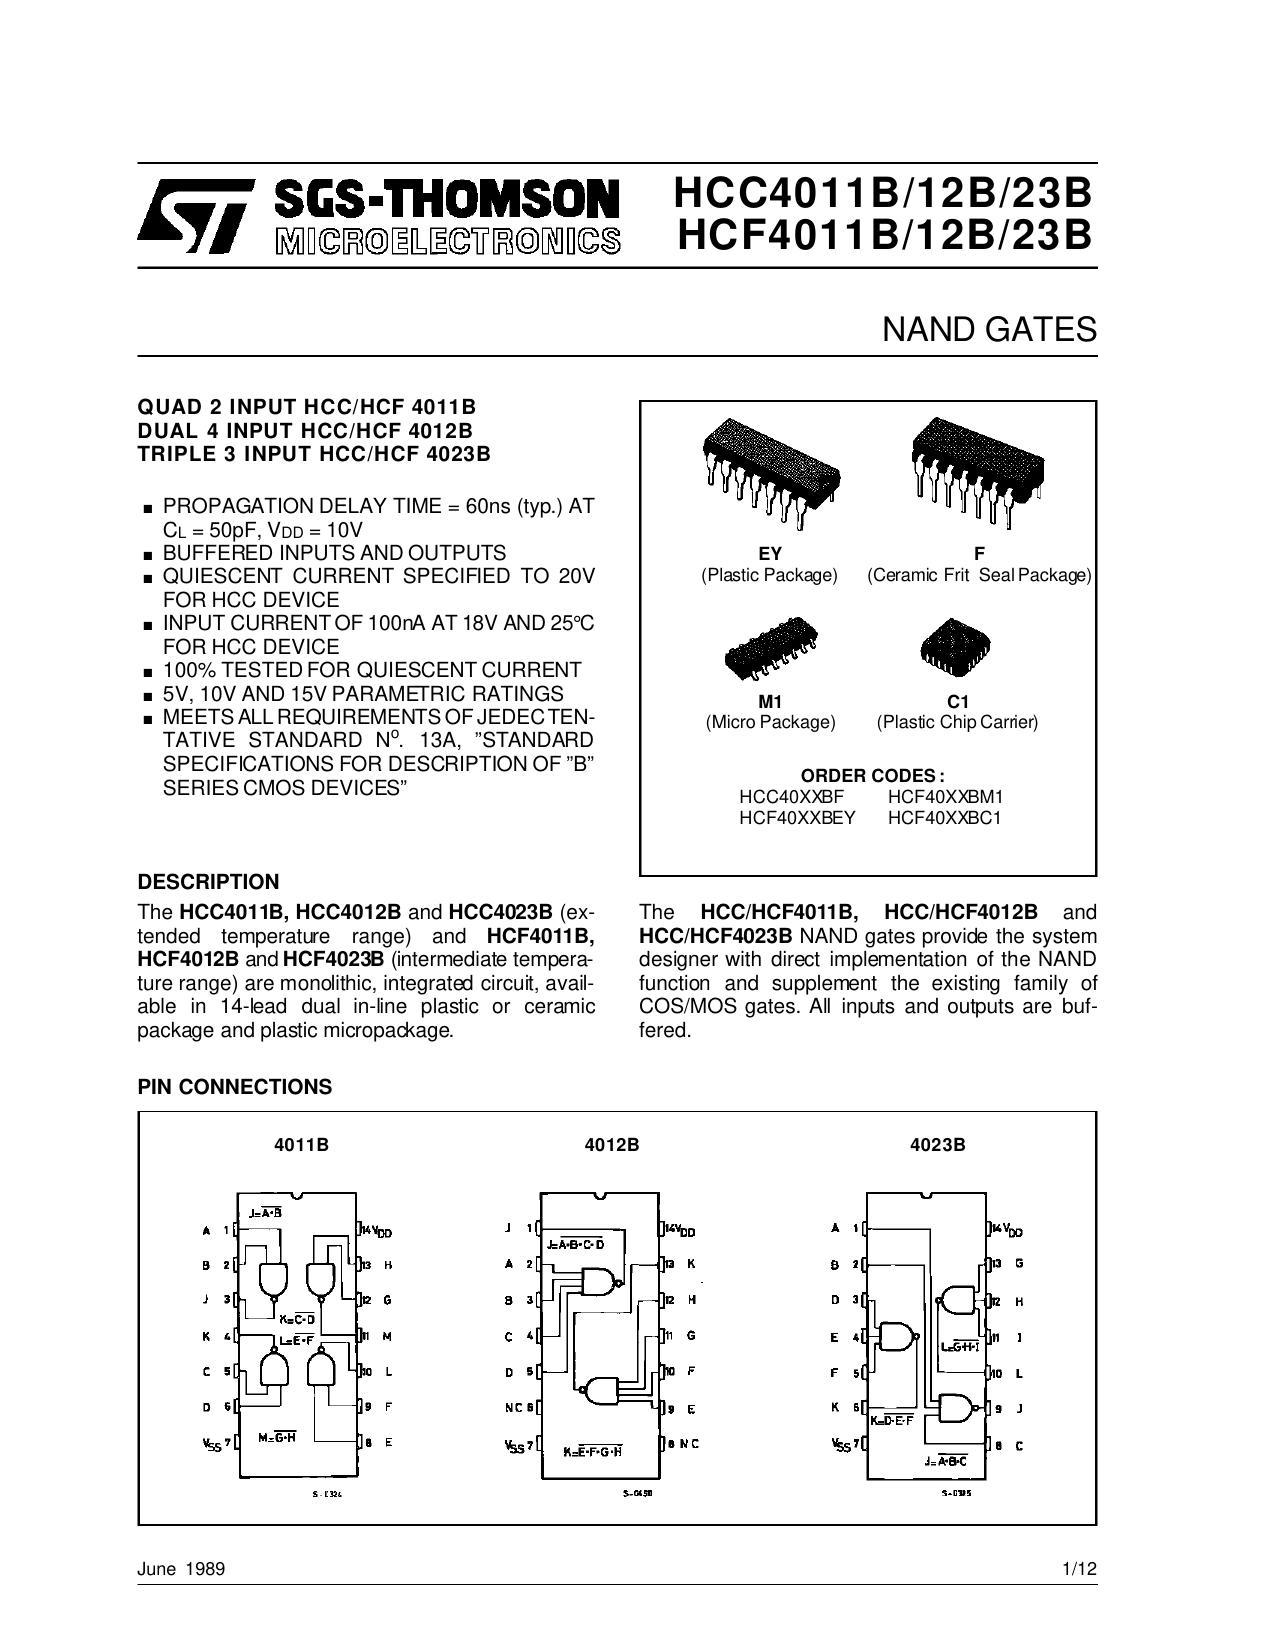 sgs-thomson-hcc4011b12b23b-microwlectronics-hcf4011b12b23b-nand-gates.pdf